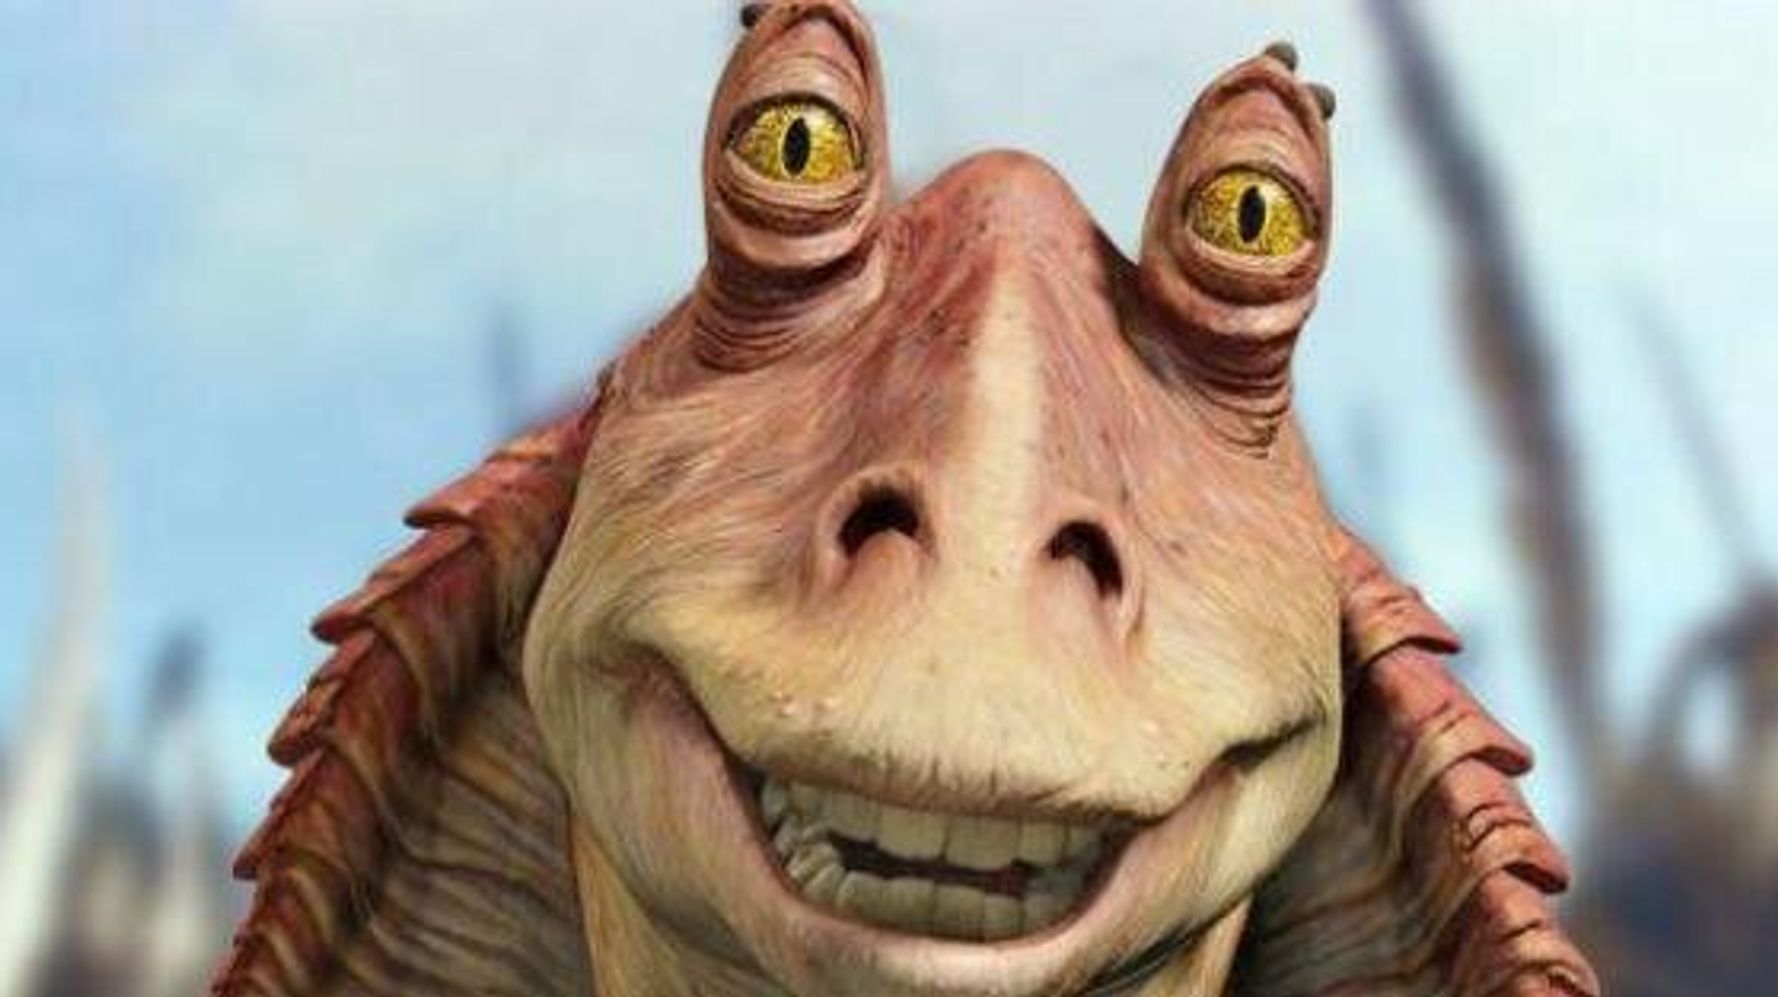 Messa happy: Jar Jar Binks won't appear in the new Star Wars film